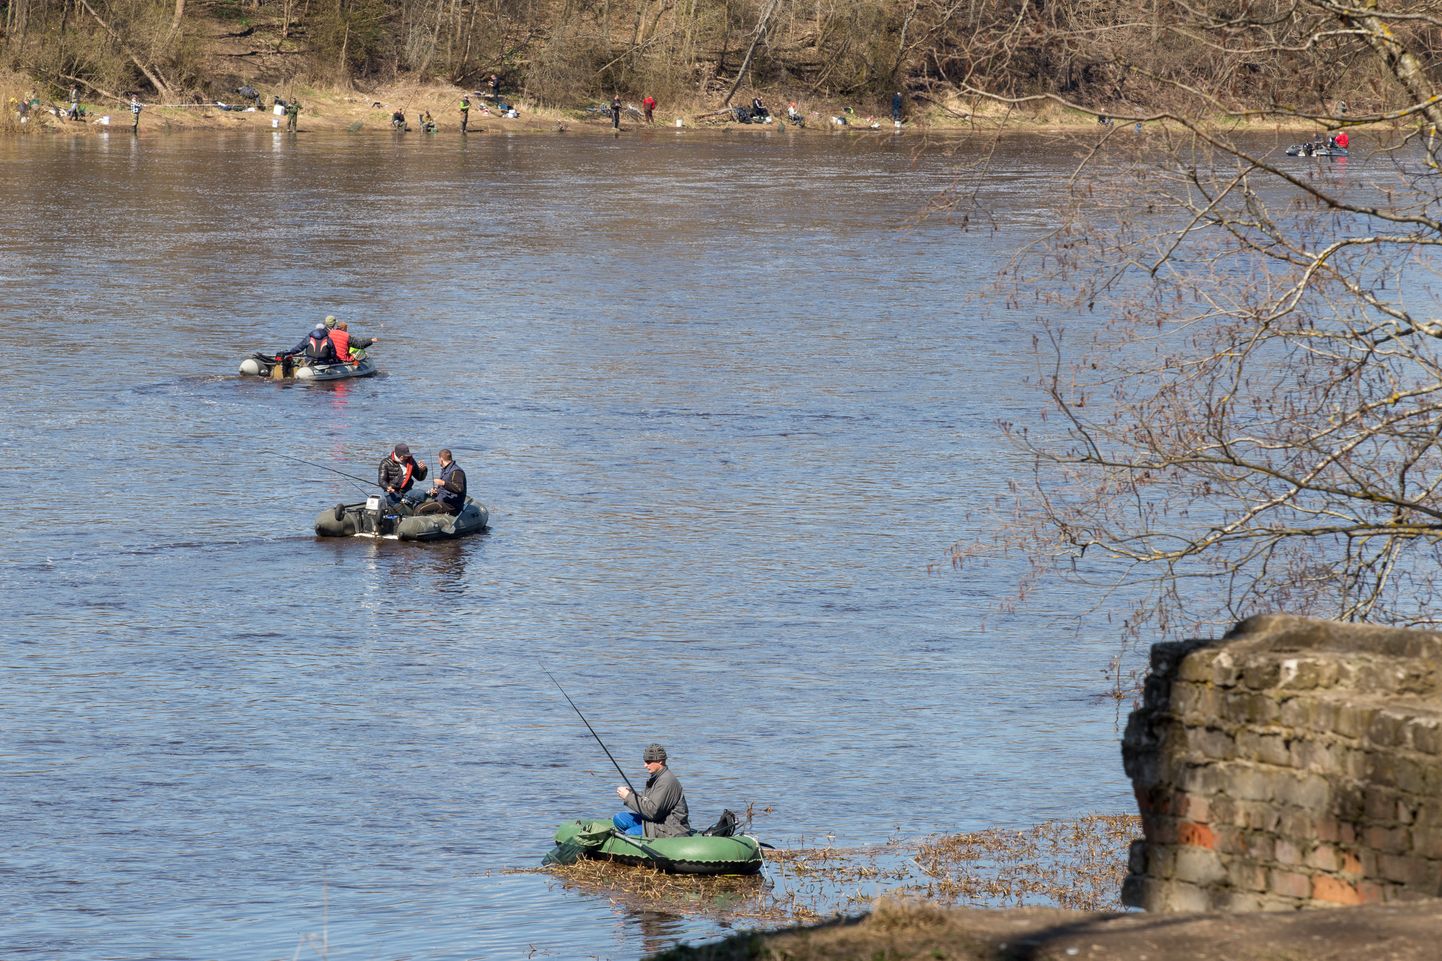 Kalastajad kummipaatidega Pärnu jõel, illustratiivne foto pole Narva juhtumiga seotud